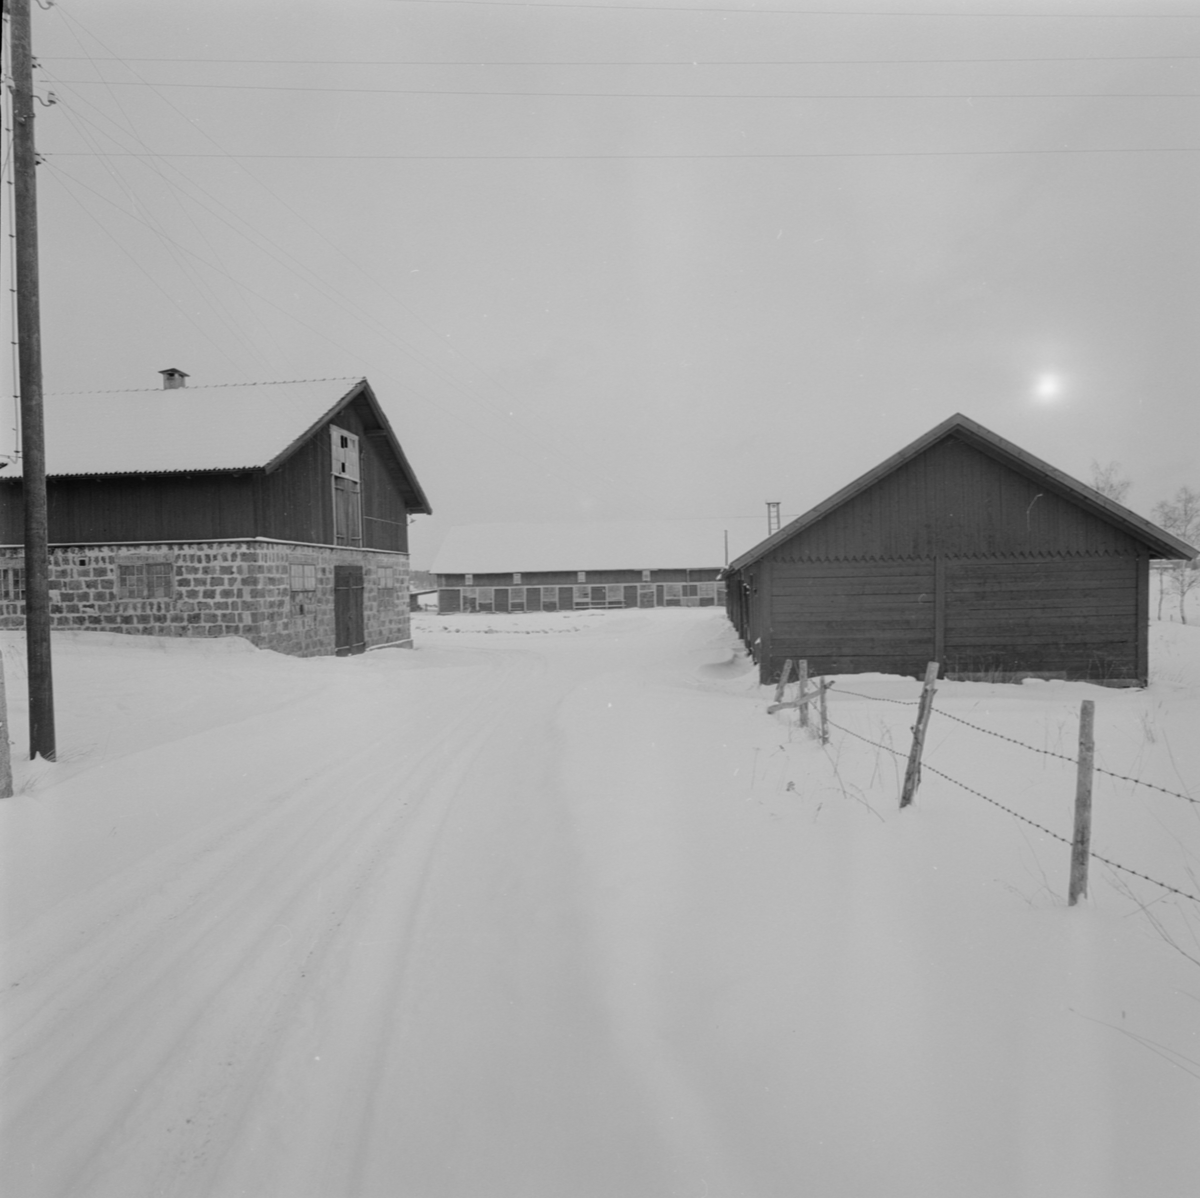 Gårdsmiljö, Alunda, Uppland februari 1958